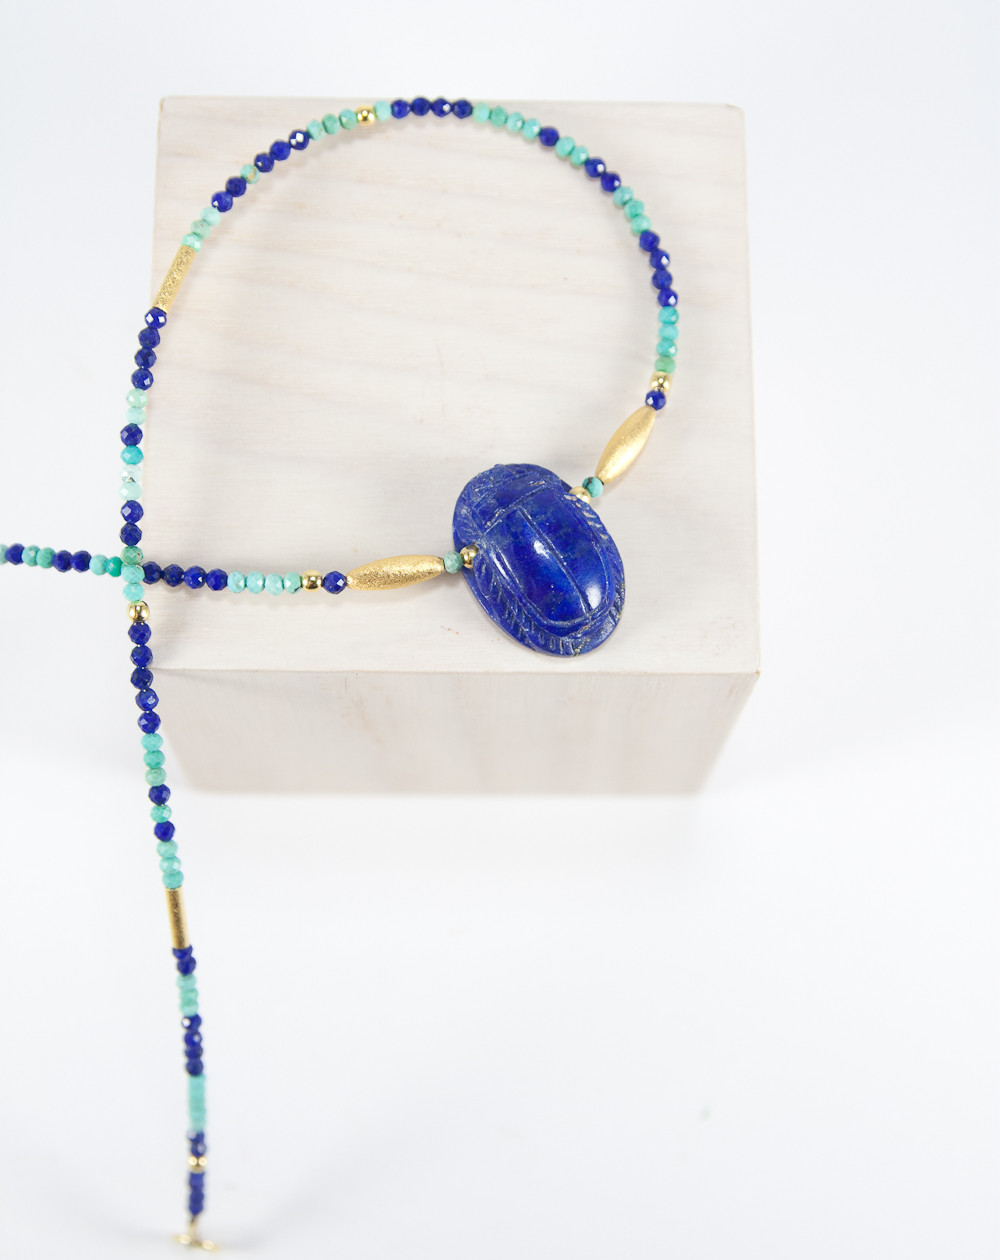 Collier en Lapis Lazuli et Turquoise, scarabée en Lapis Lazuli. Sanùk création, Bayonne.